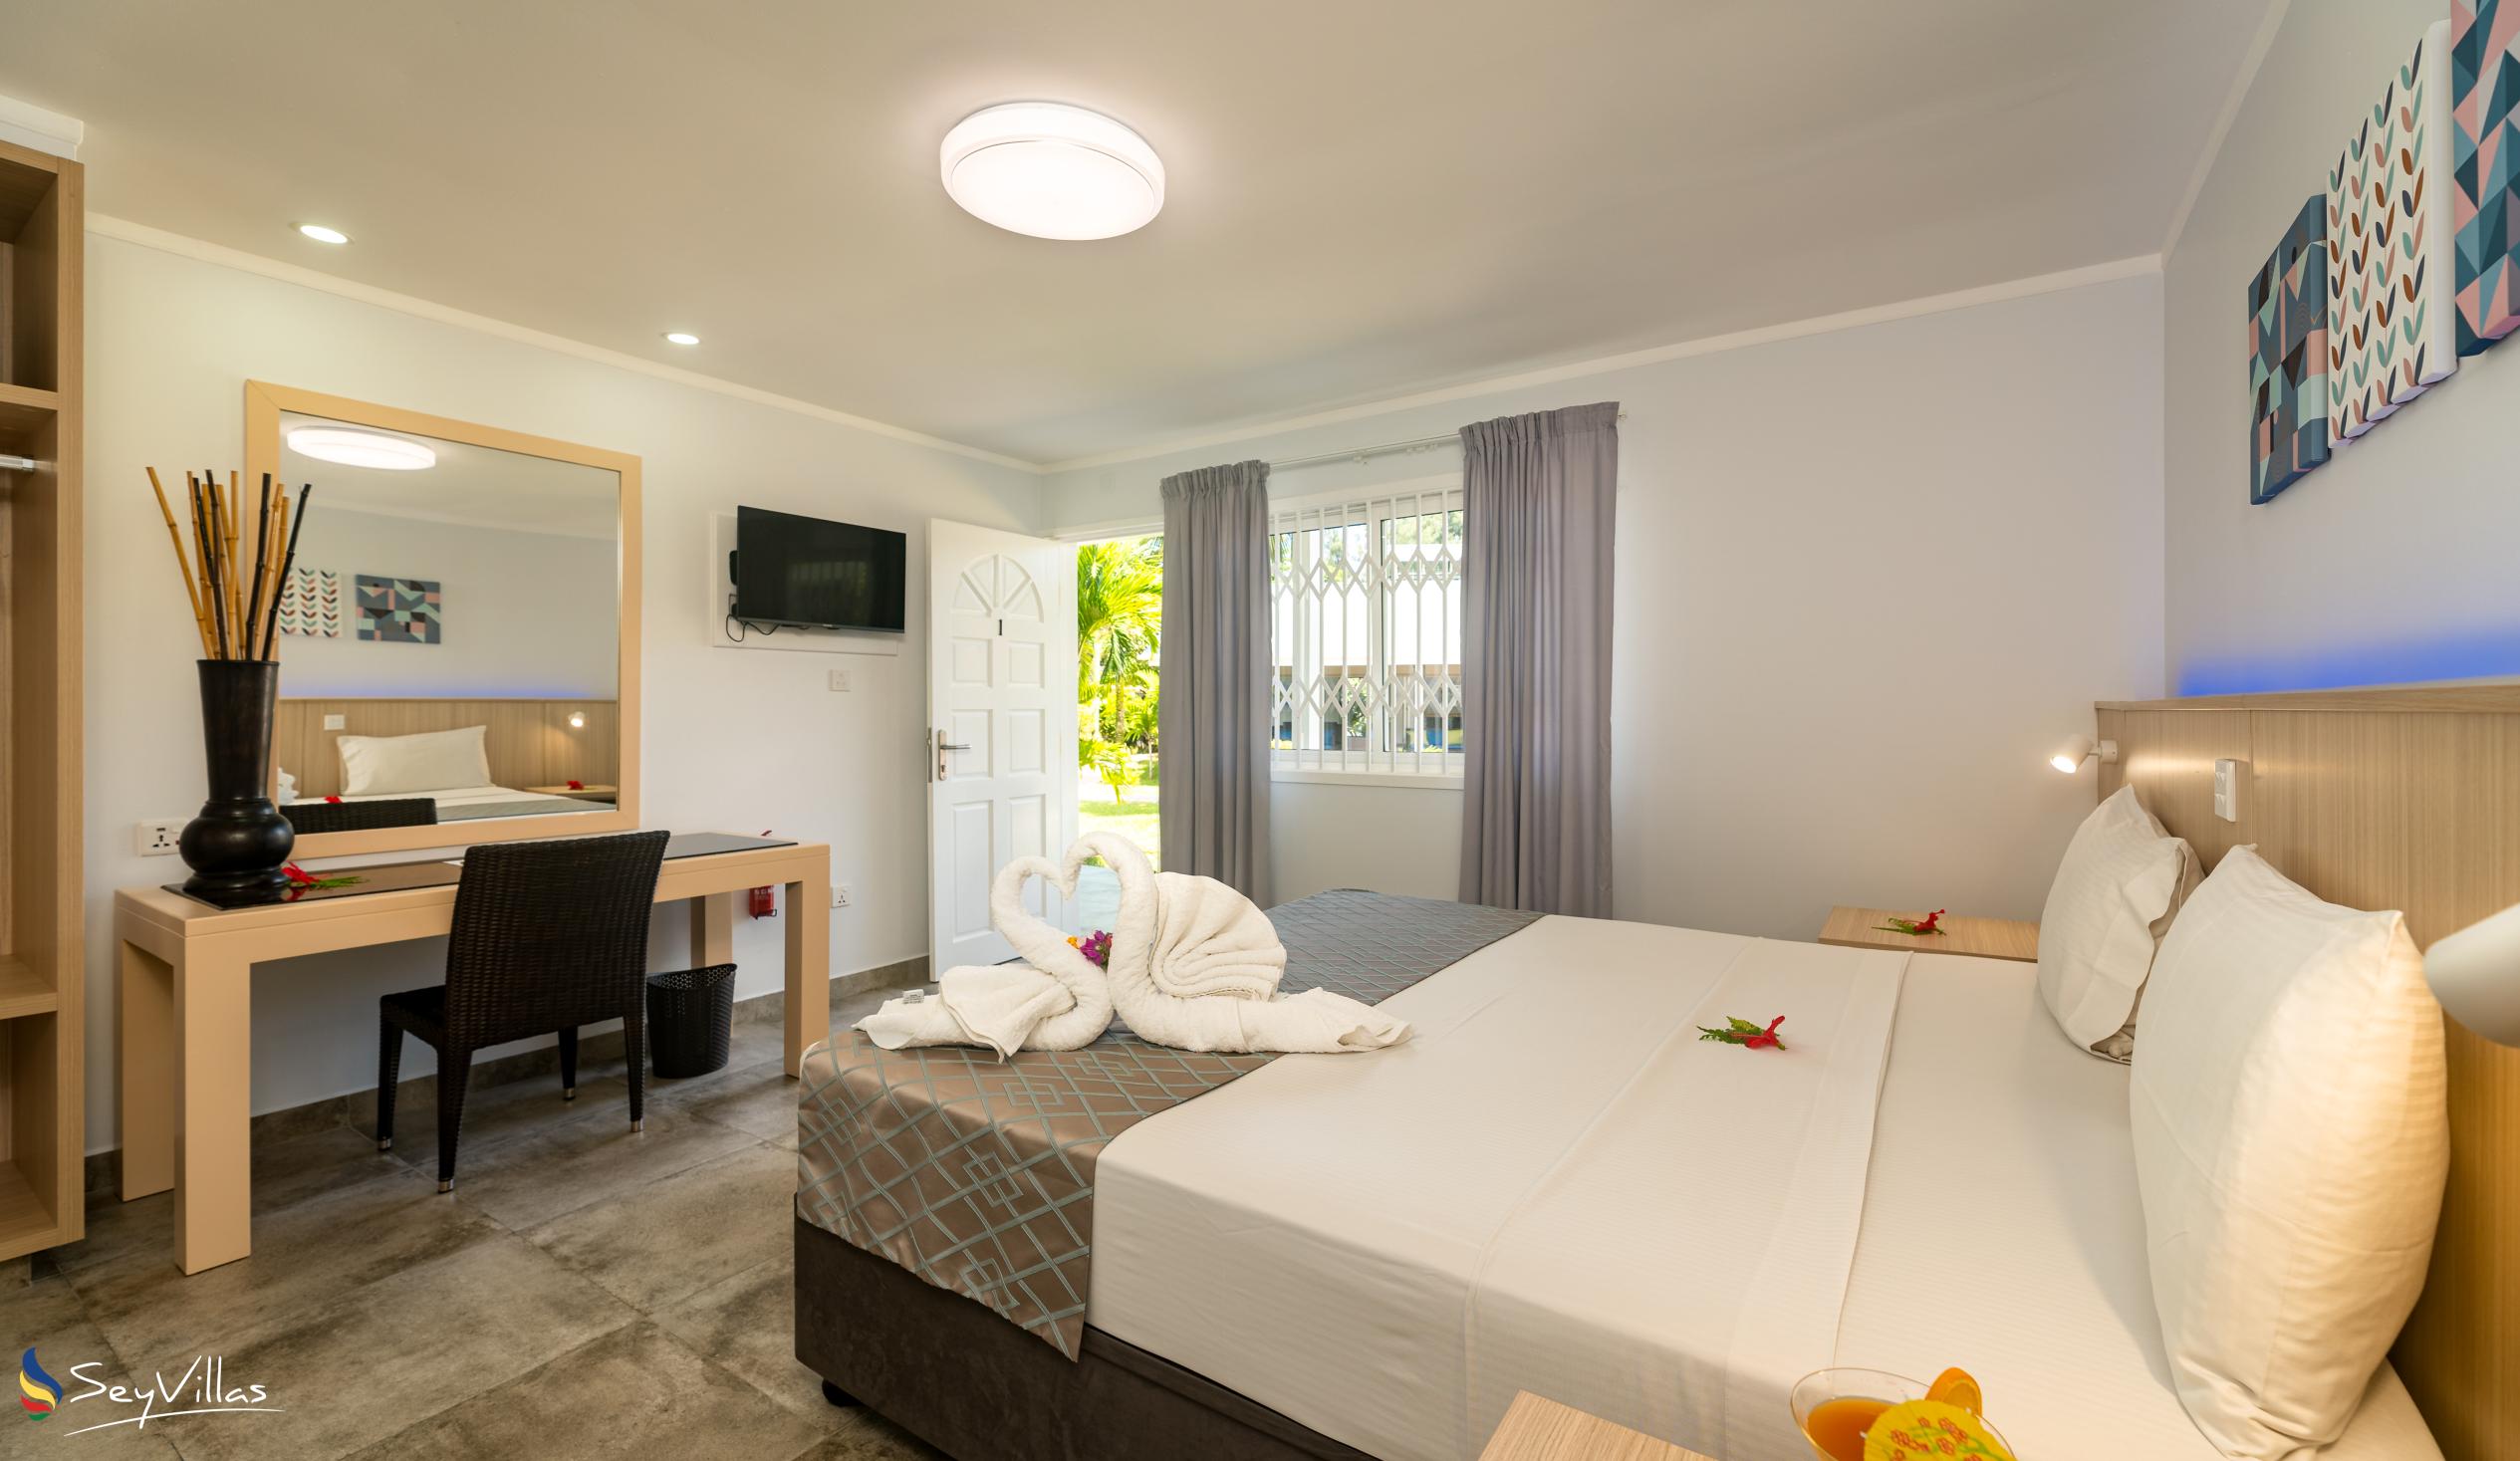 Photo 69: Hotel La Roussette - Superior Room - Mahé (Seychelles)